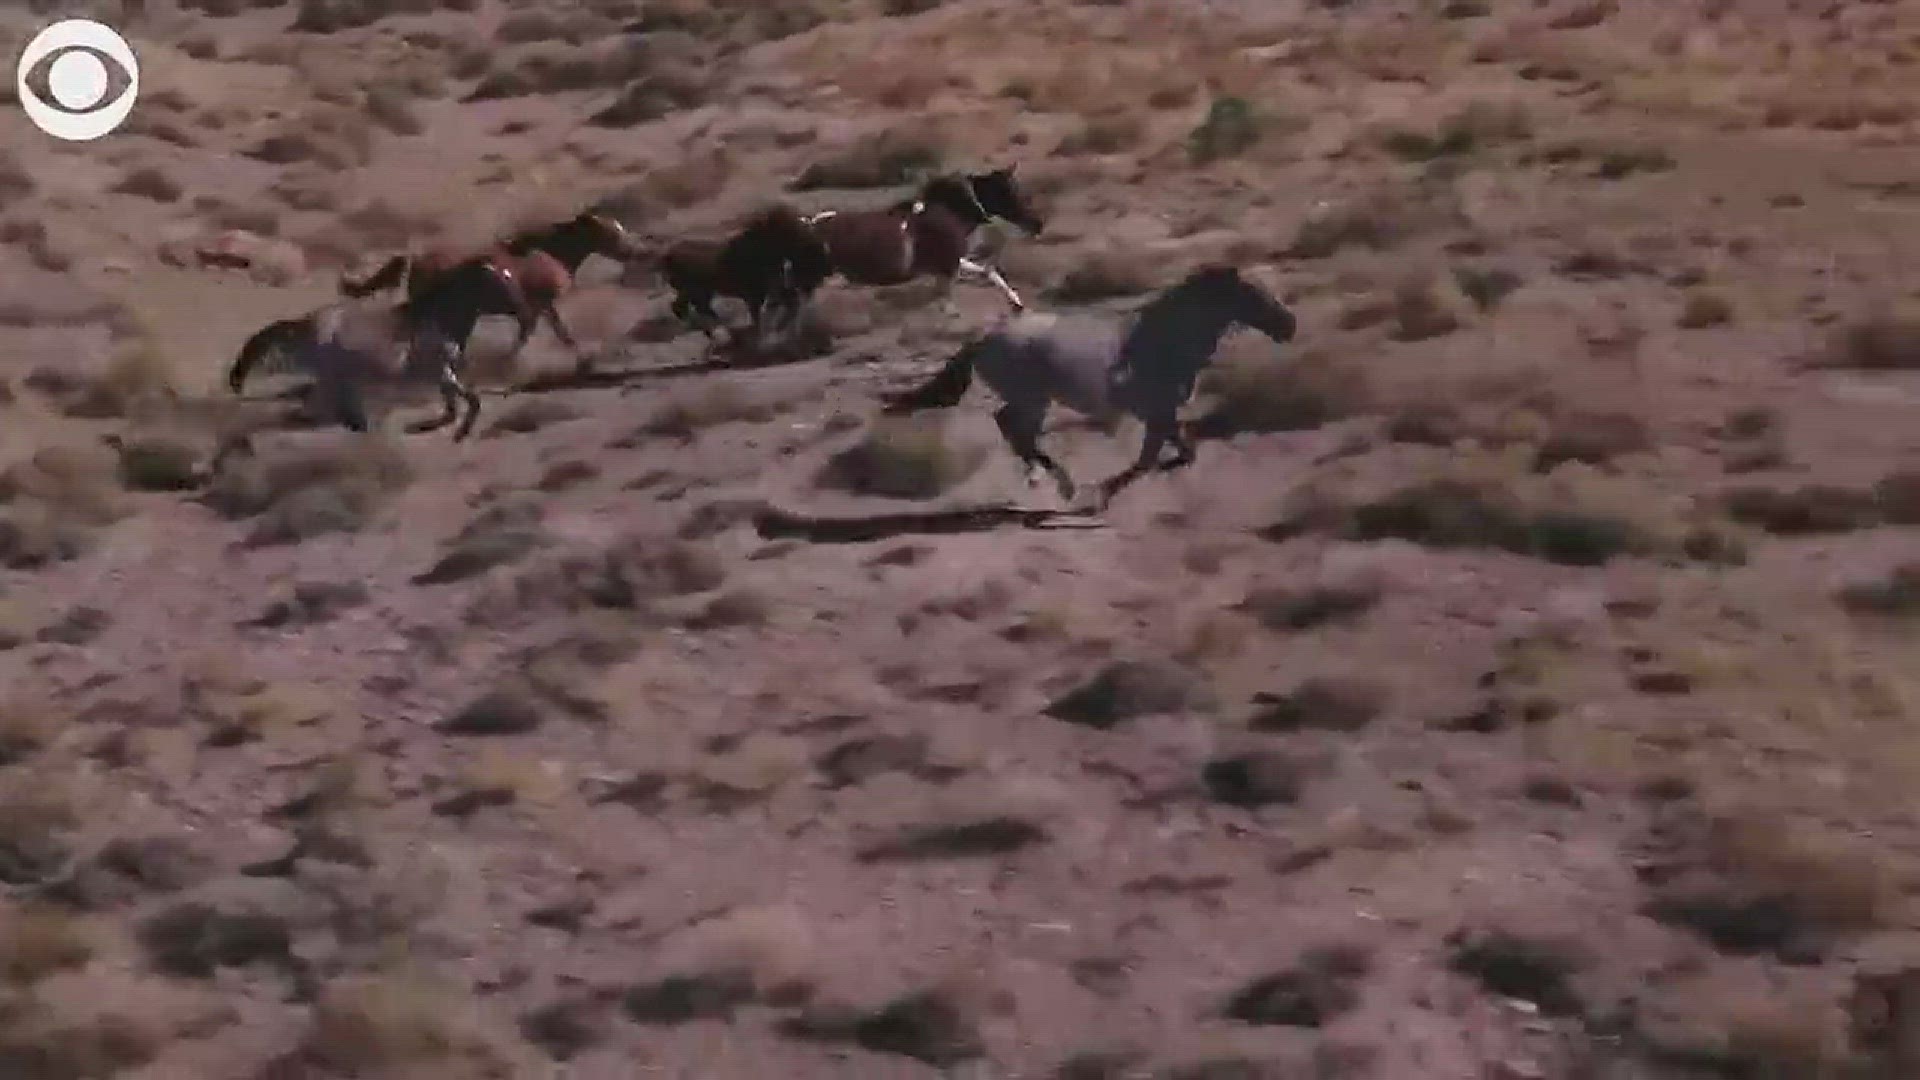 Wild Horses on the Run in the Utah Desert